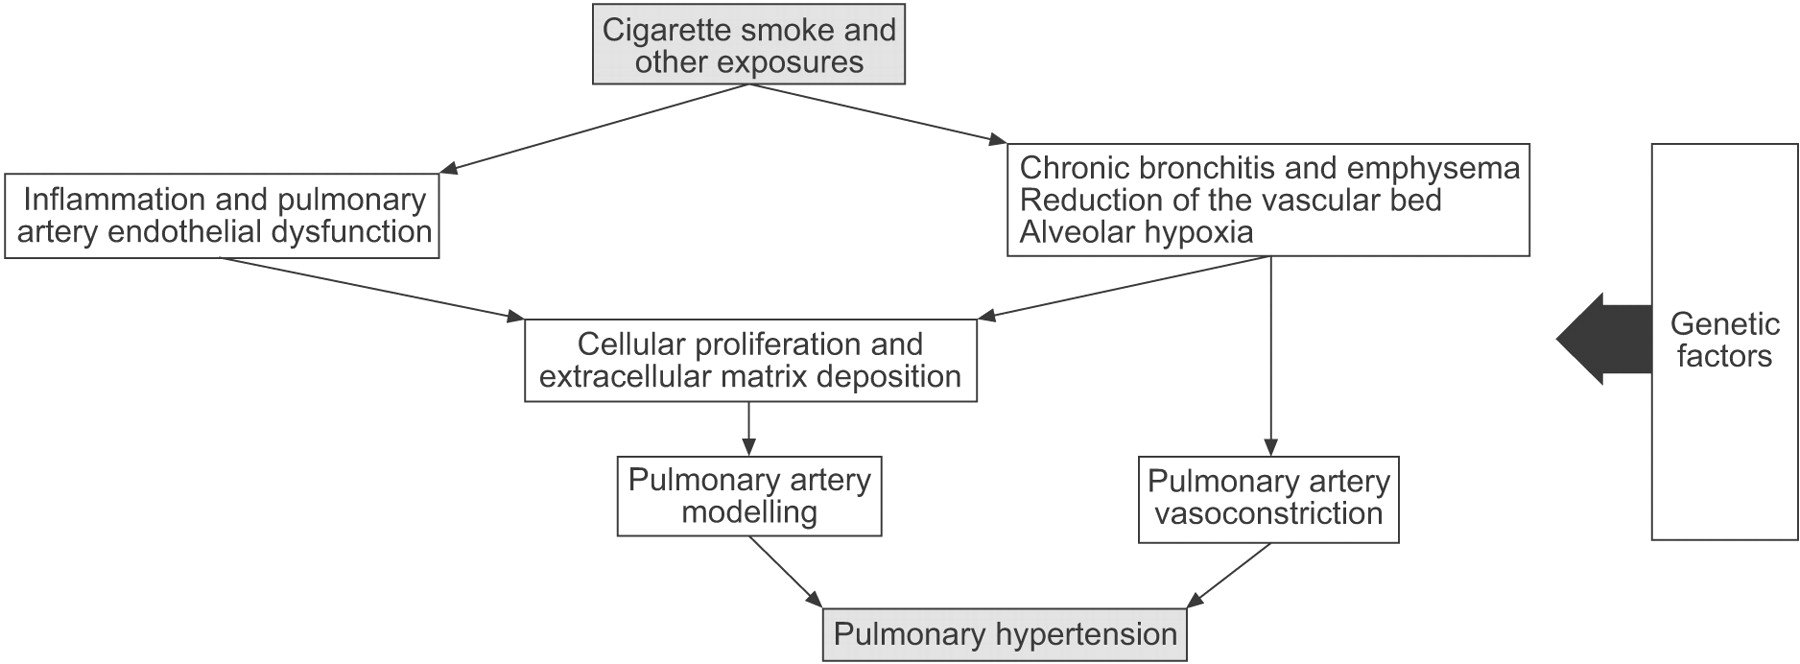 Pulmonary hypertension in COPD